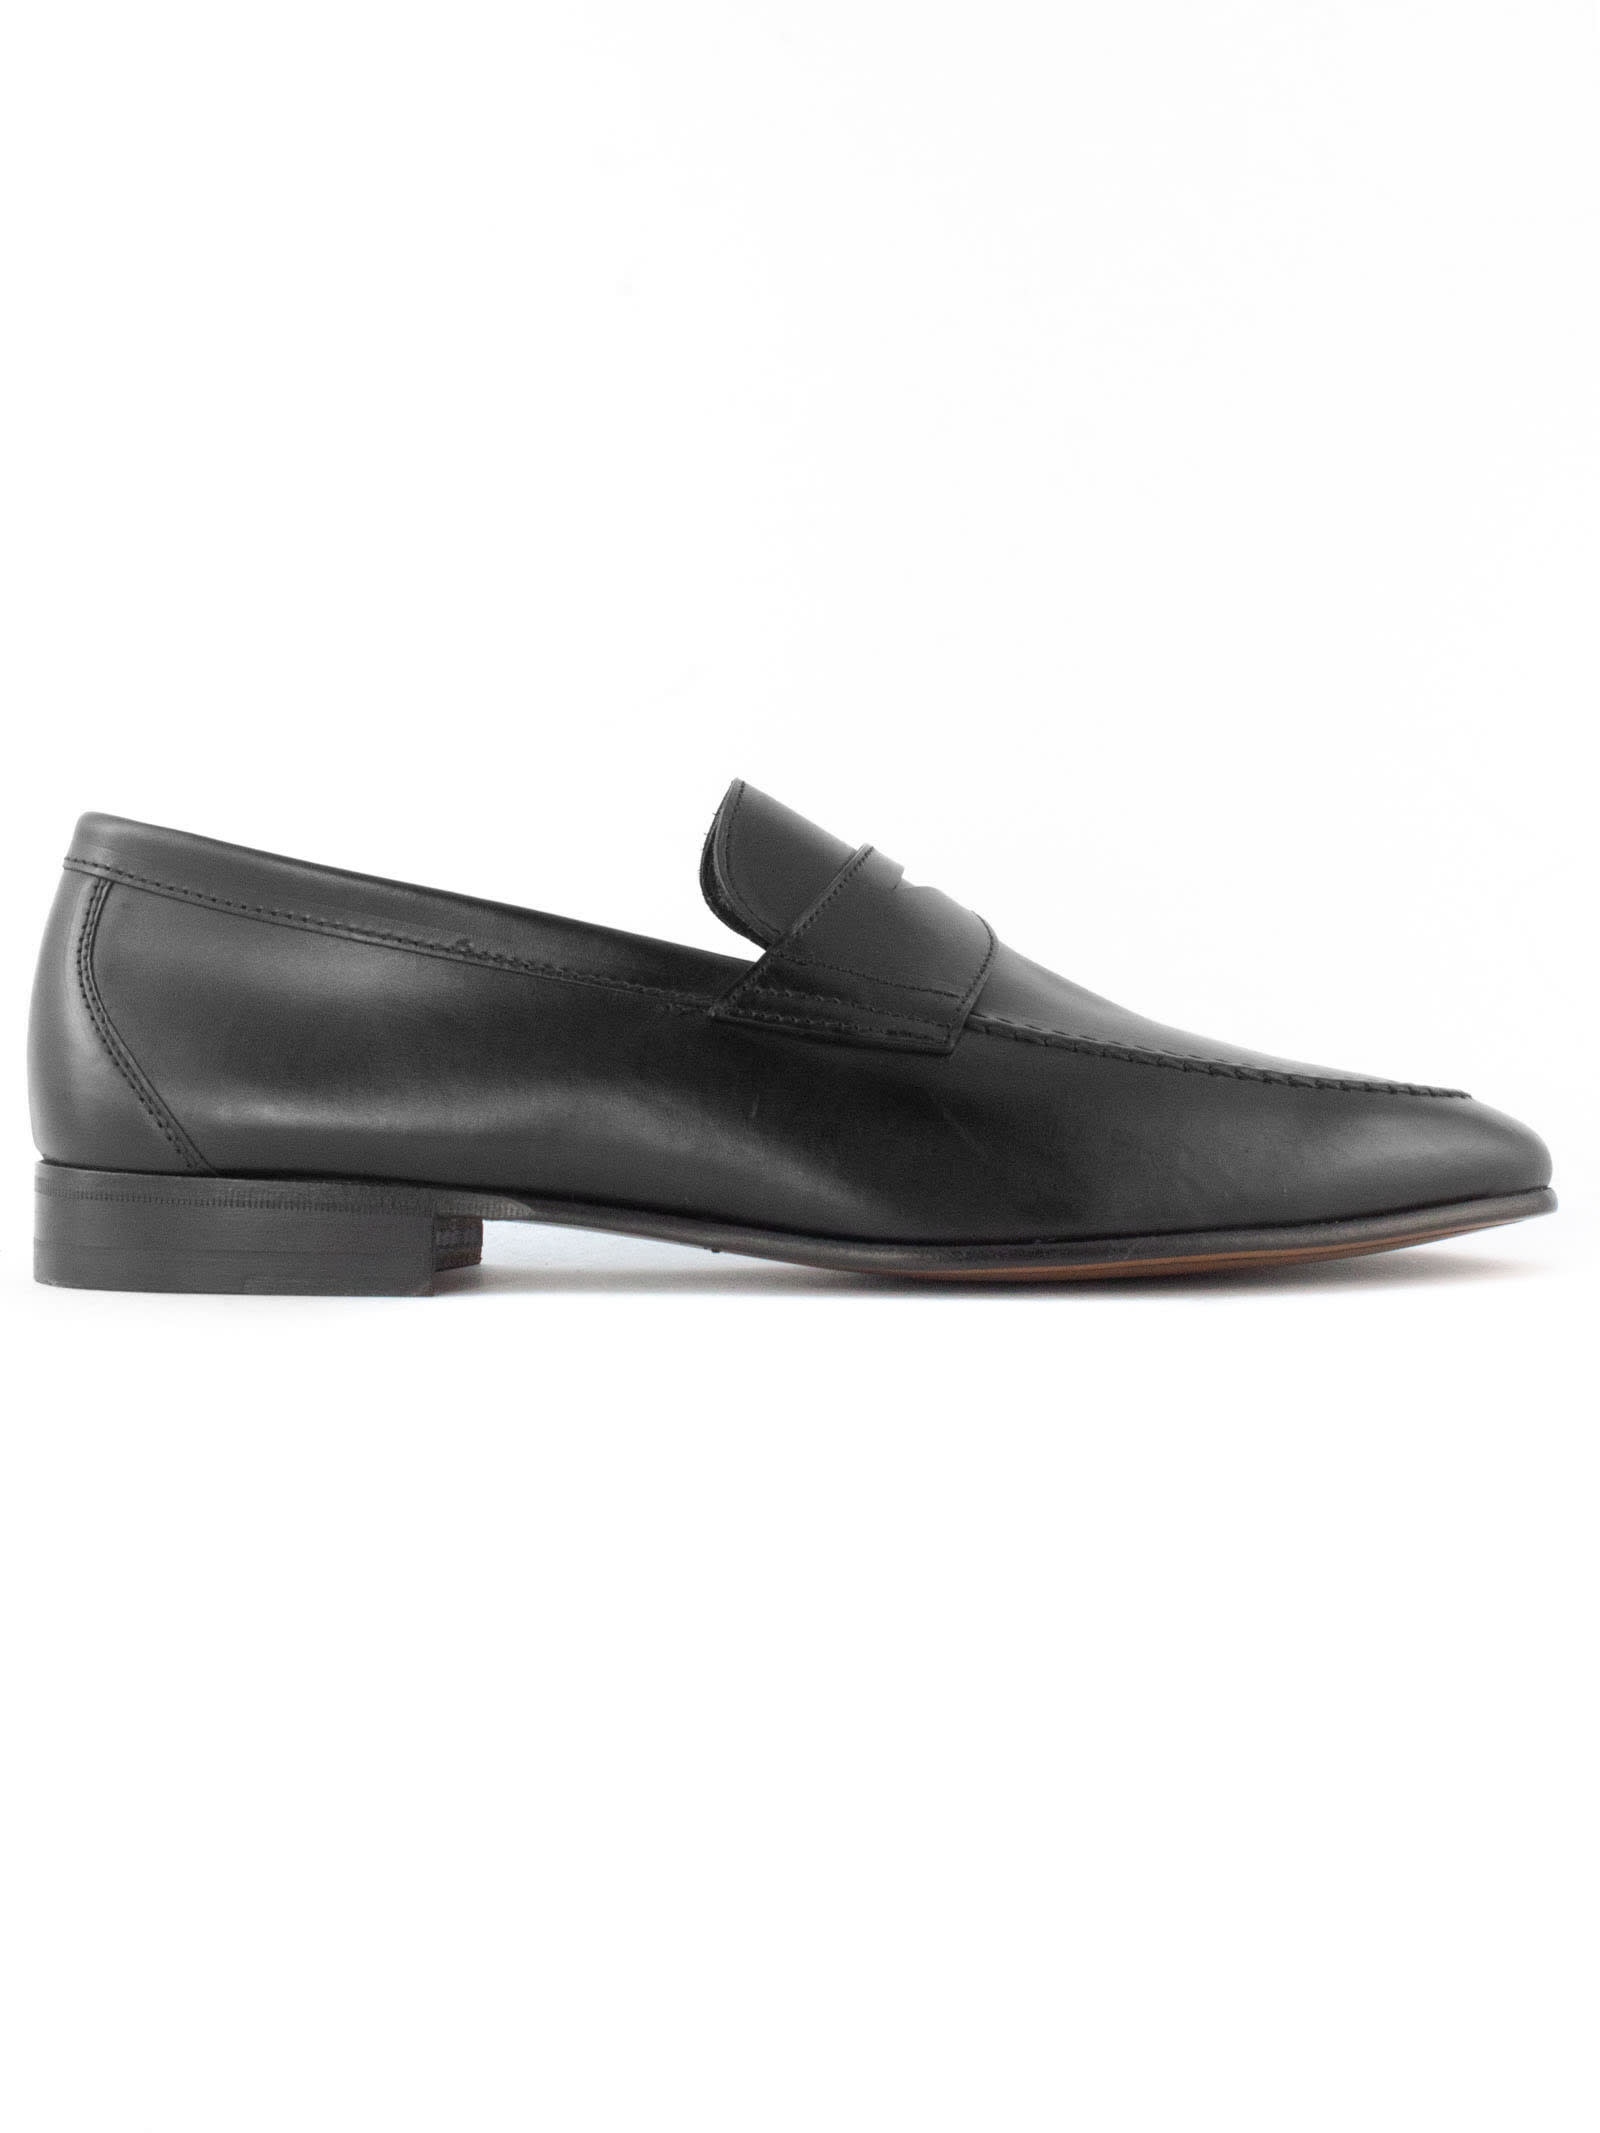 Shop Berwick 1707 Black Leather Loafer